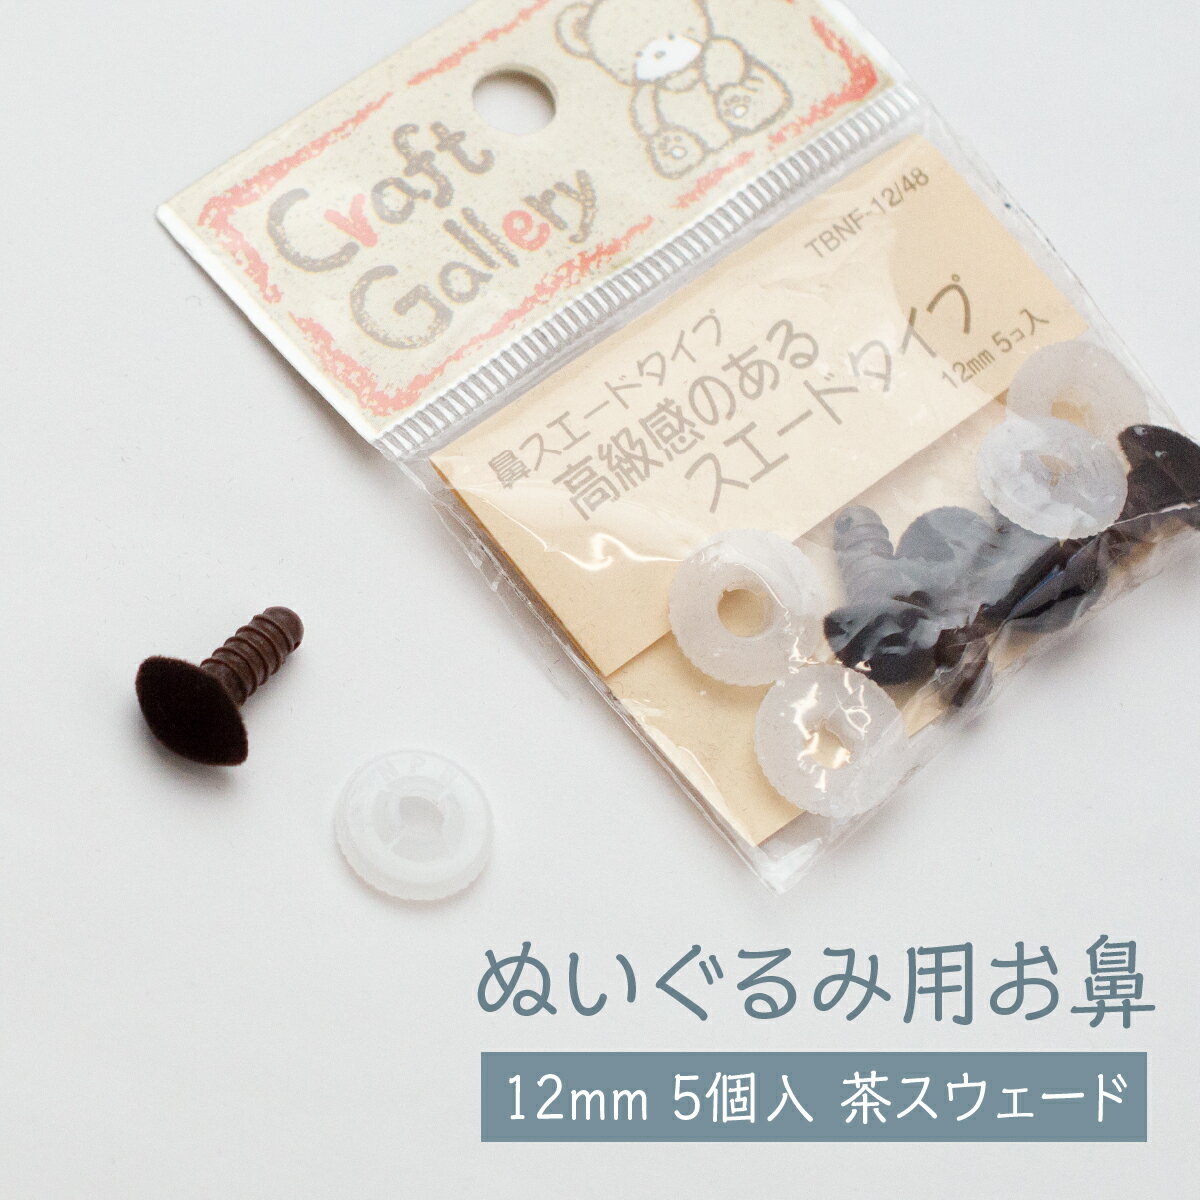 ぬいぐるみ用 お鼻 茶スウェードタイプ 12mm 5個入 グッズプロ